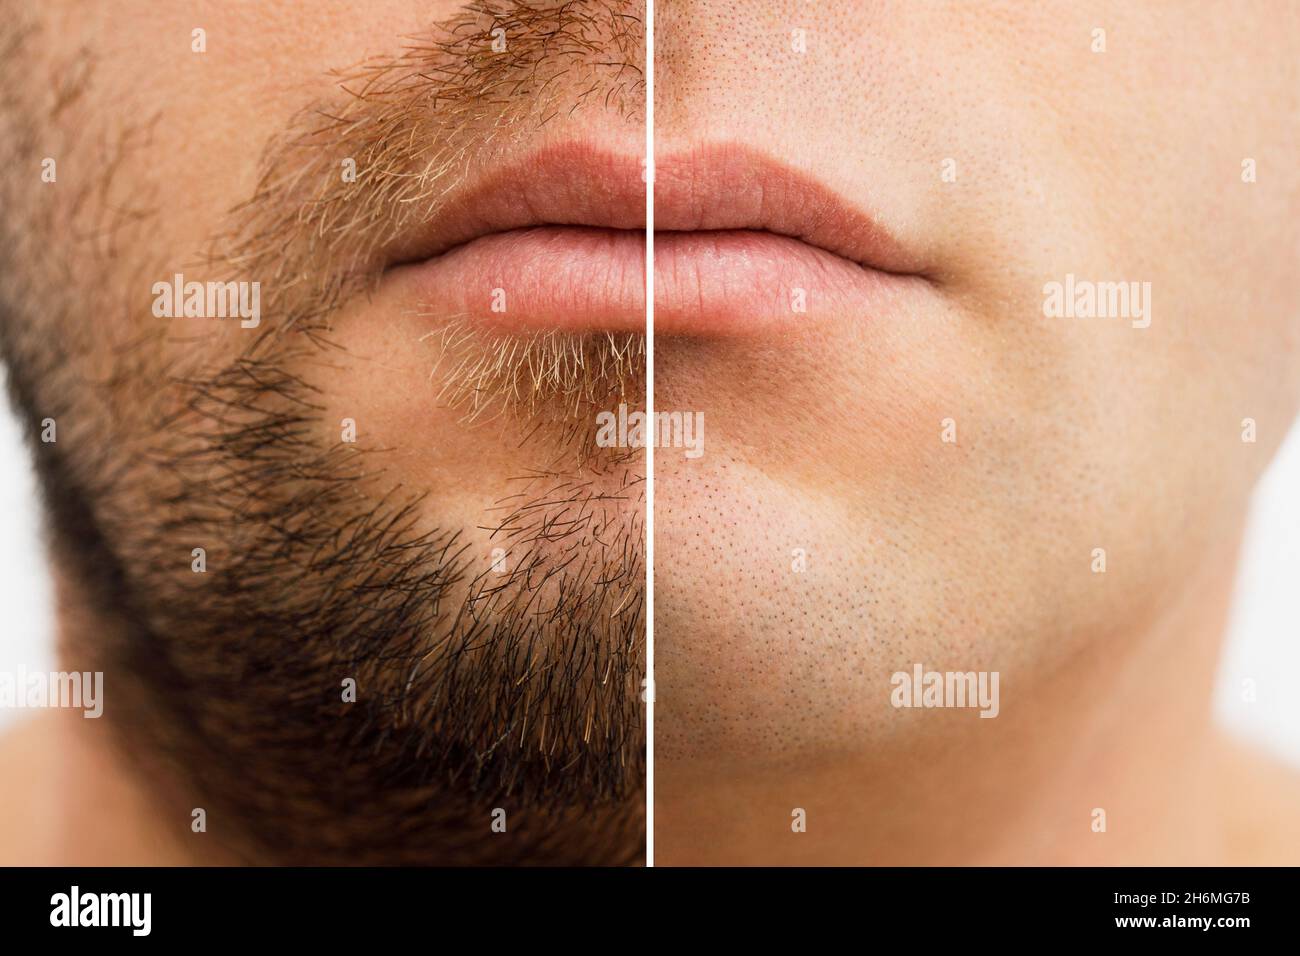 Primer plano foto de la cara de un hombre antes y después del afeitado. Un  hombre joven con barba. Comparación de la cara de un hombre con una barba y  sin barba.